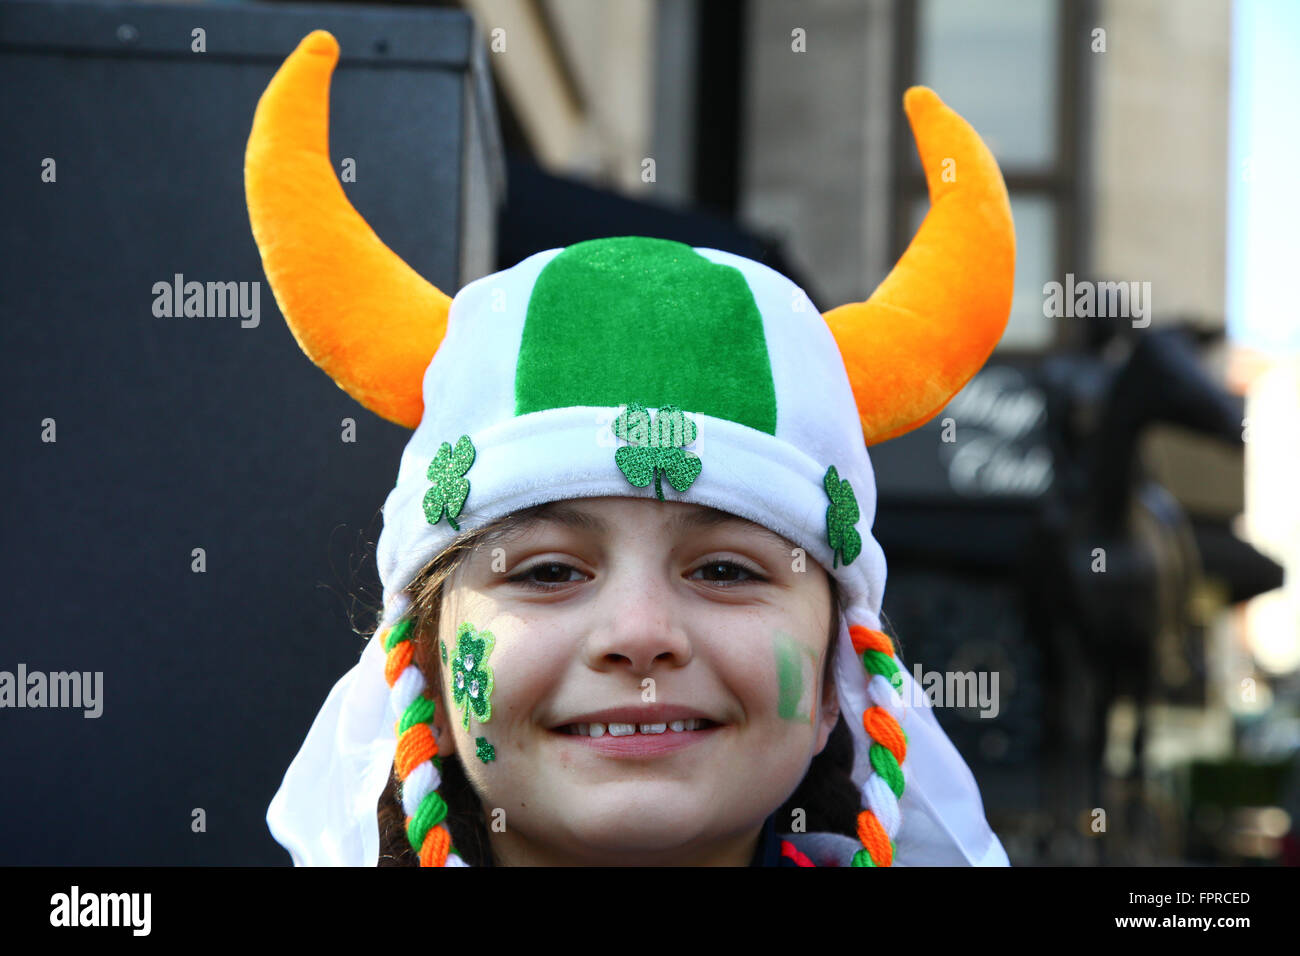 London, UK. 13. März 2016. Tausende nehmen Teil in St. Patricks Day Parade und Festlichkeiten auf dem Trafalgar Square in London. Stockfoto